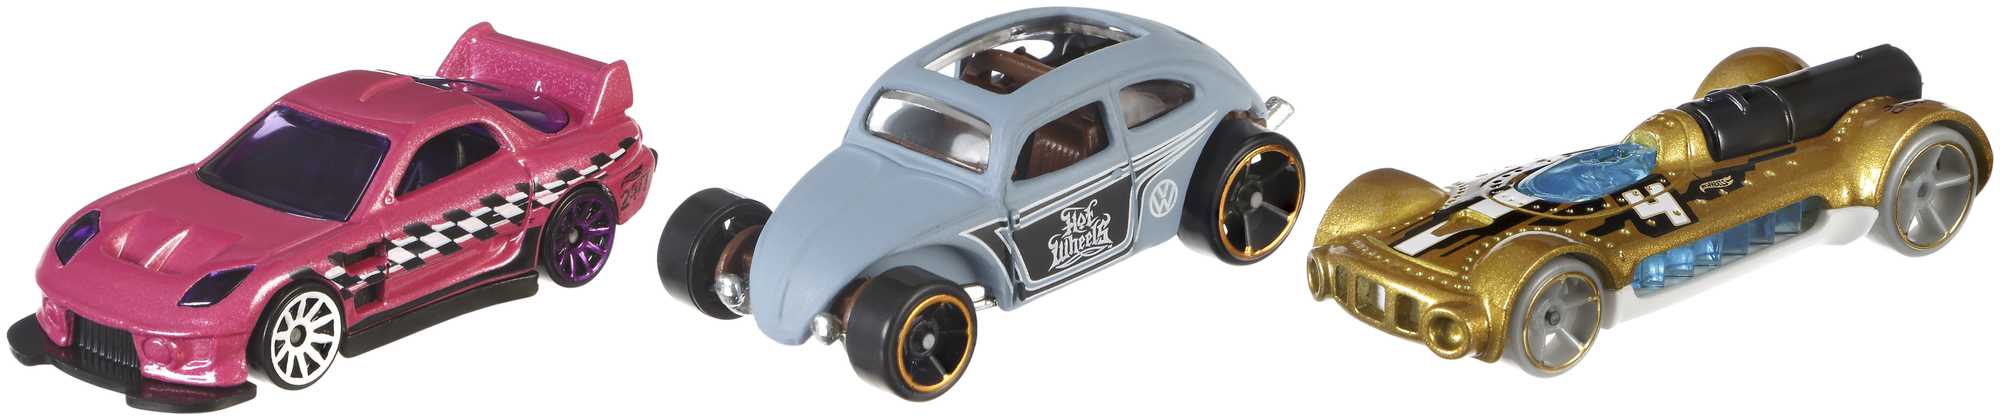 Mattel Hot Wheels K5904 véhicule pour enfants